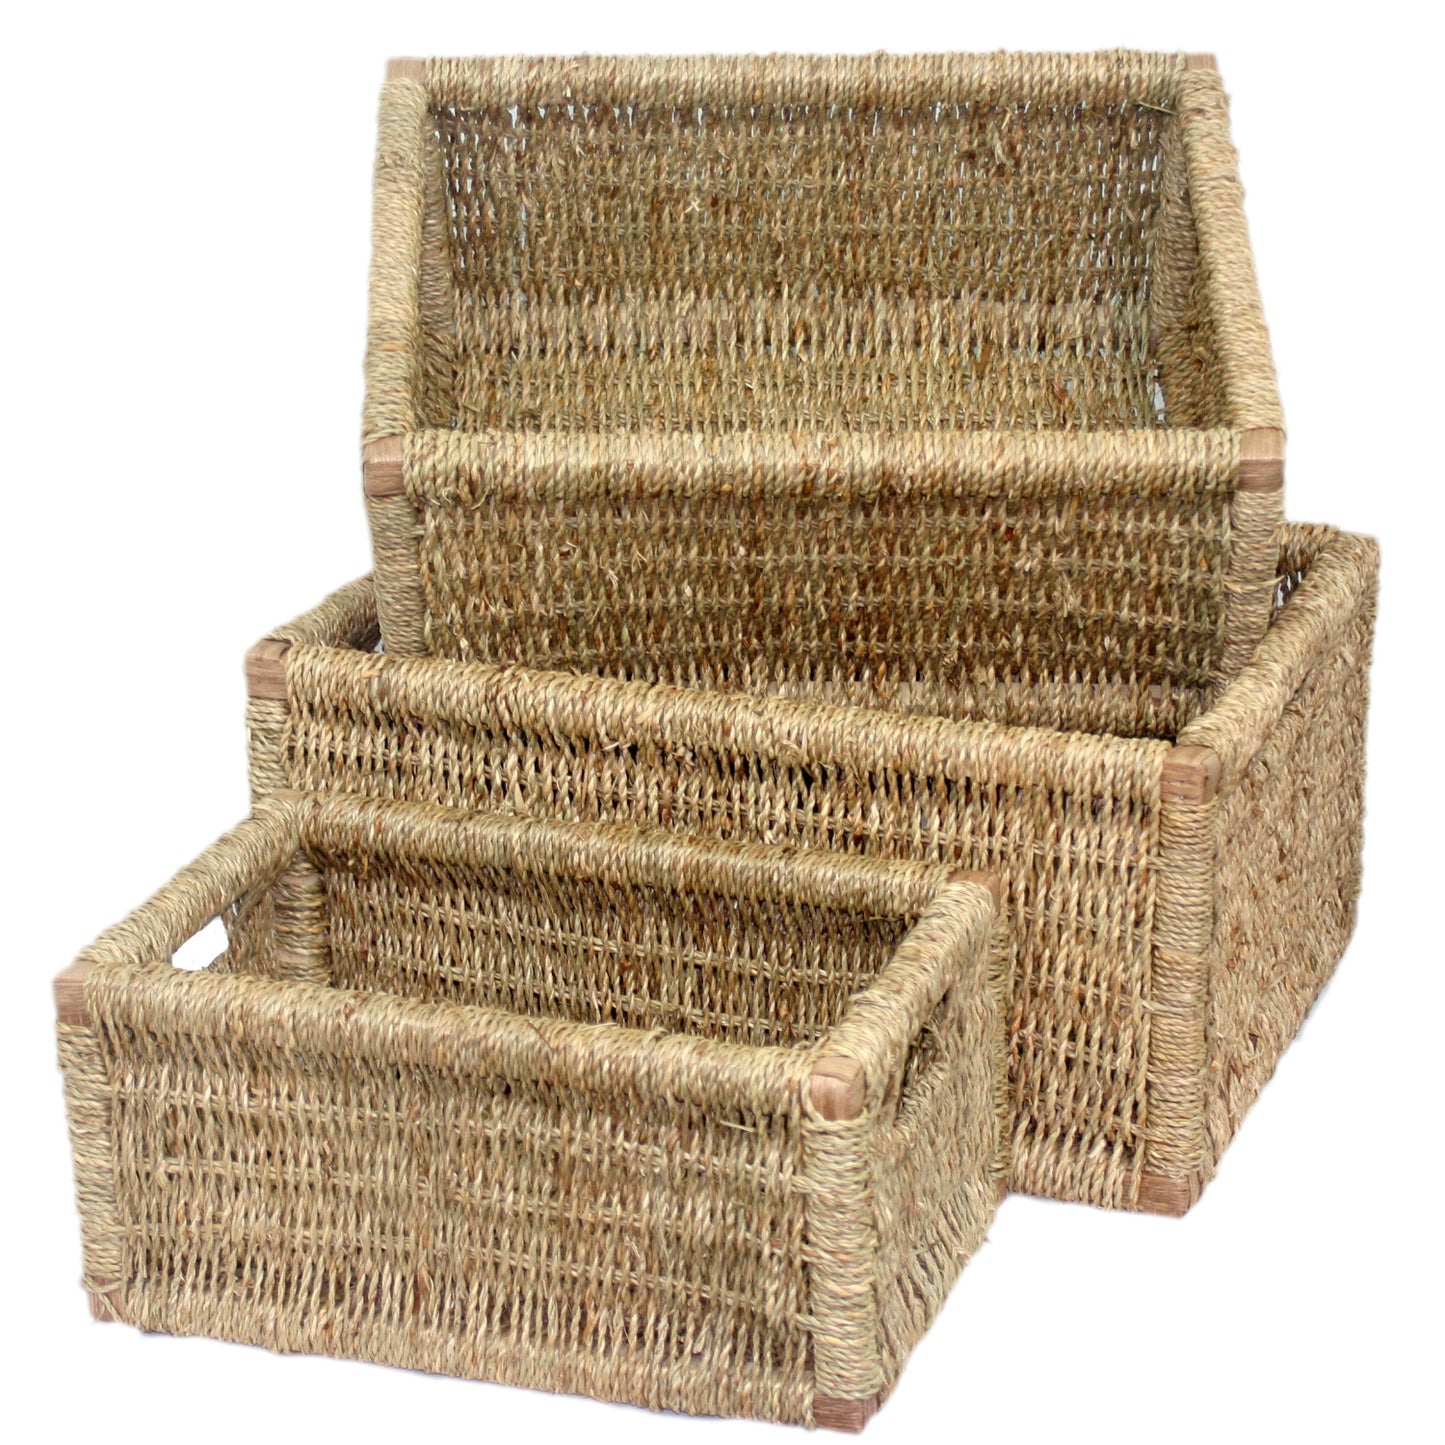 Seagrass Storage Basket Set 3